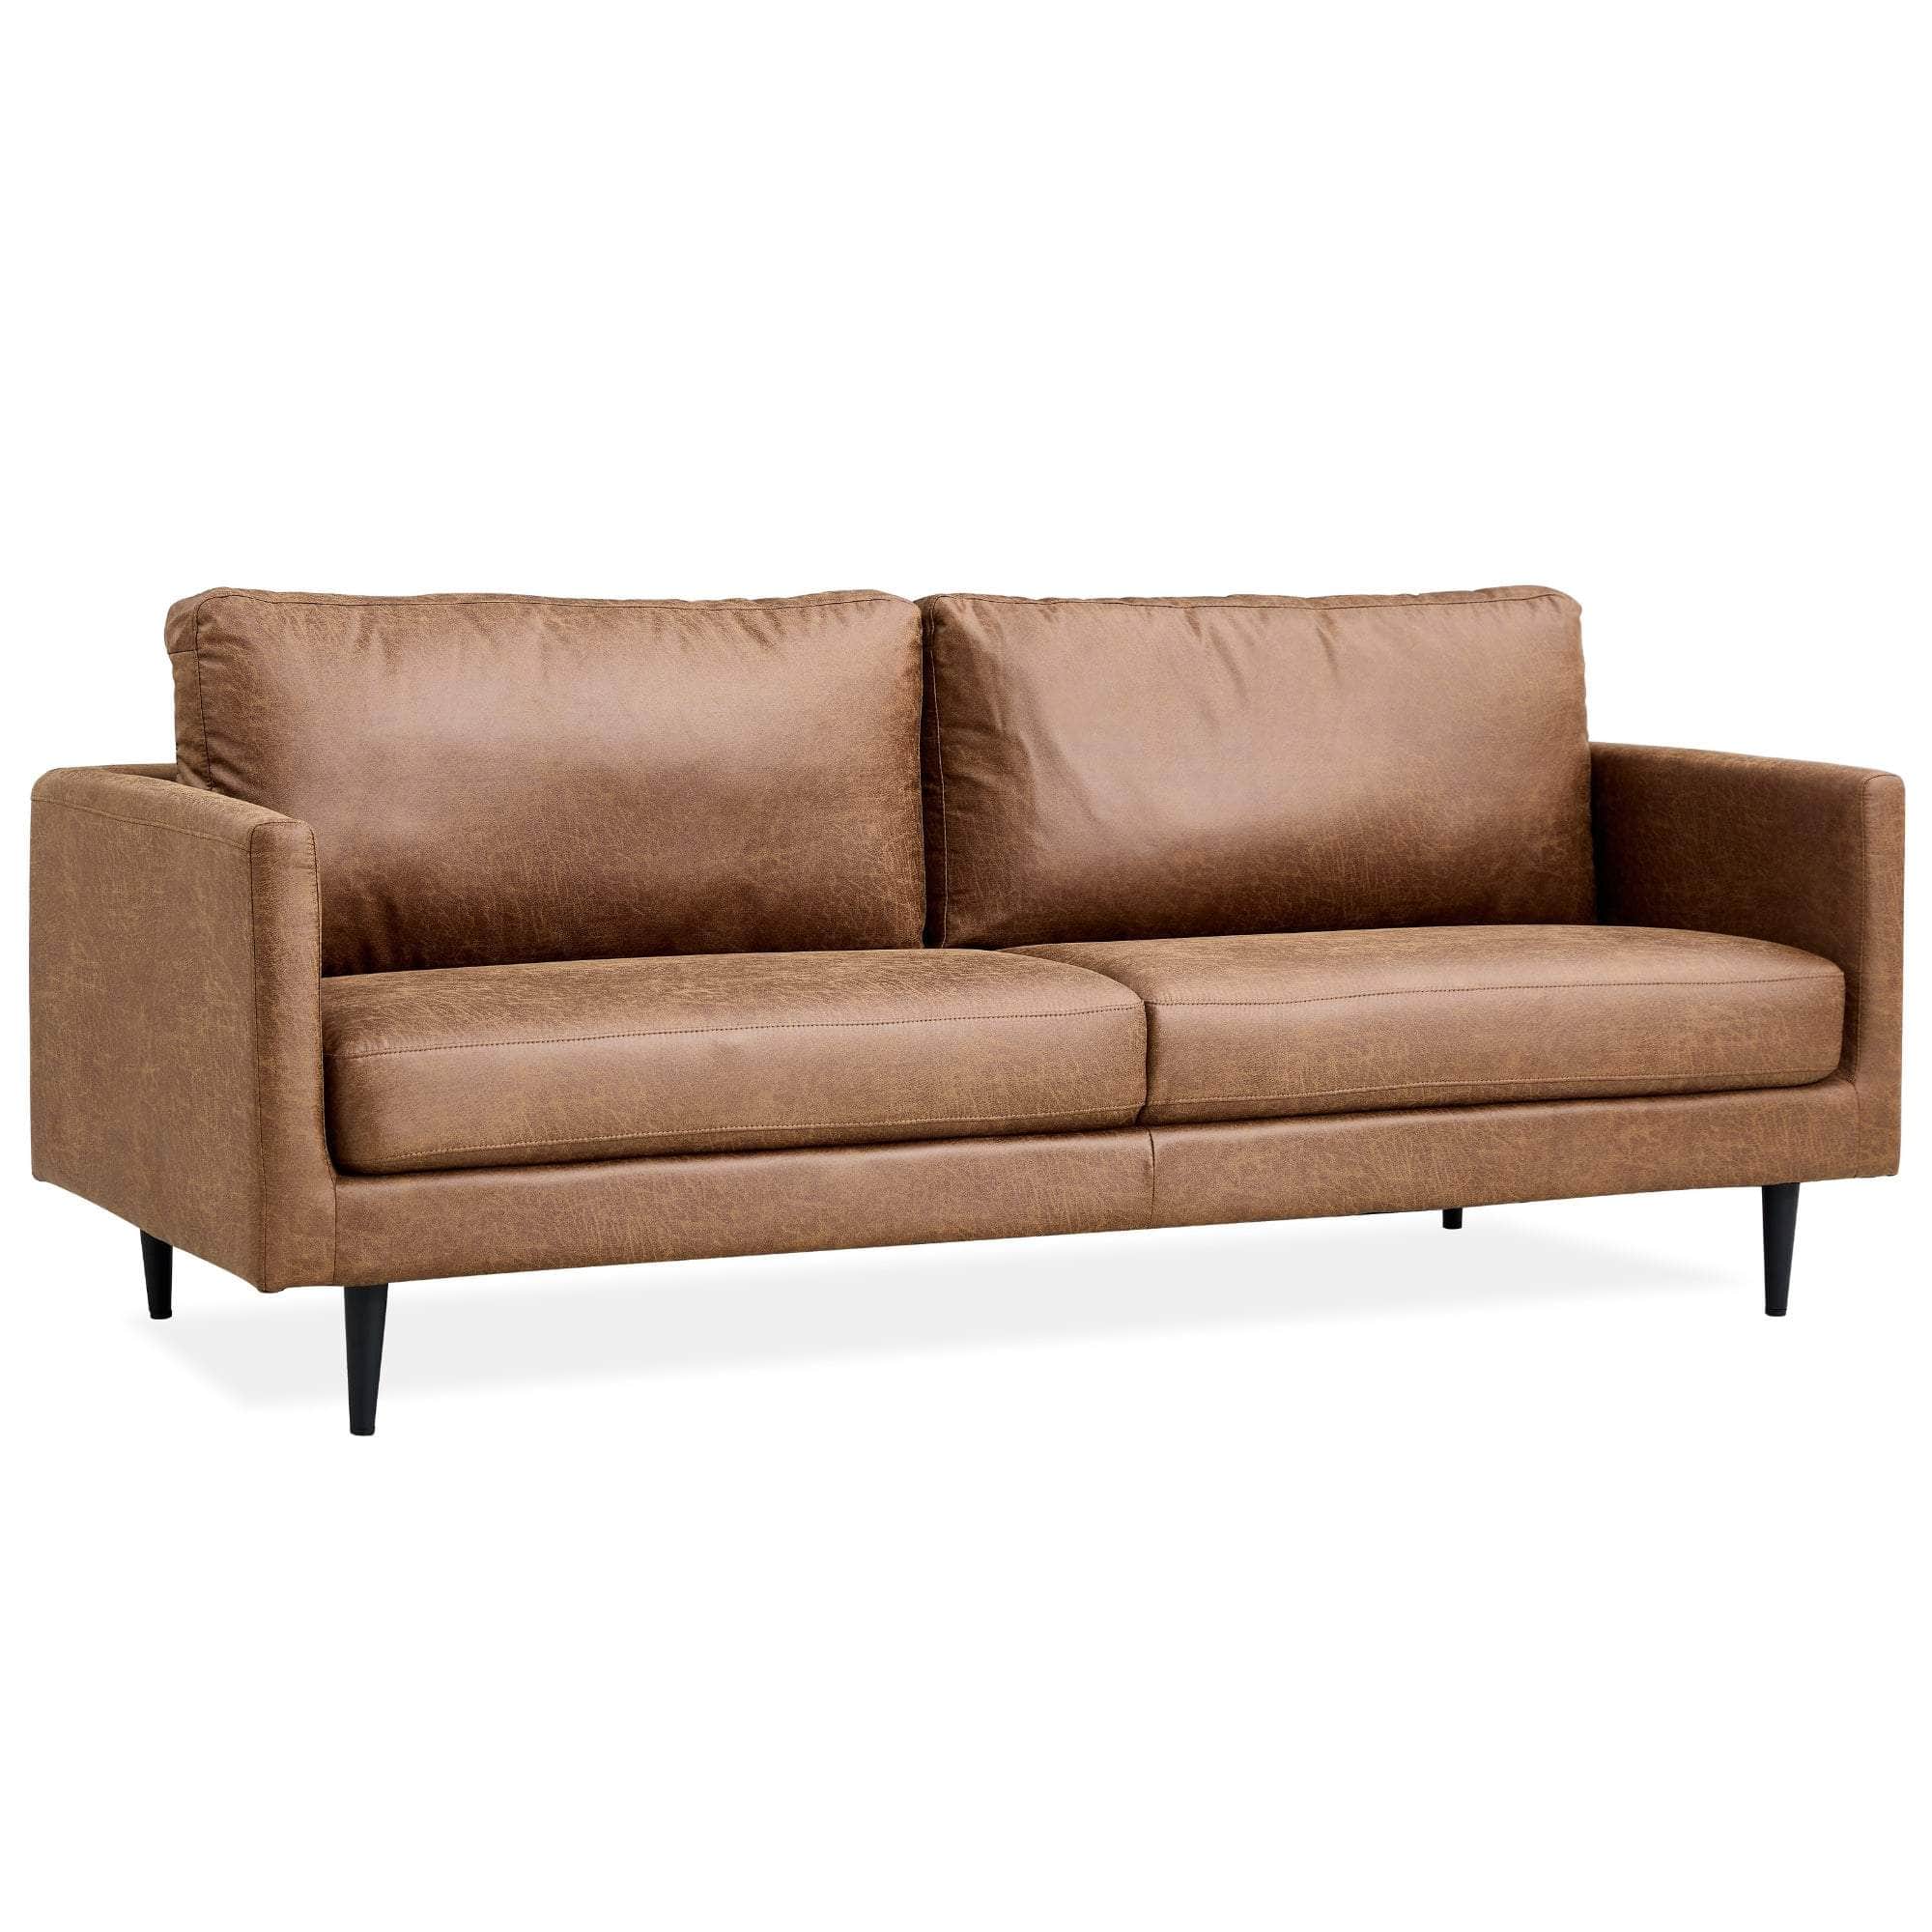 Athena 3 Seater Sofa Fabric Uplholstered Lounge Couch - Saddle